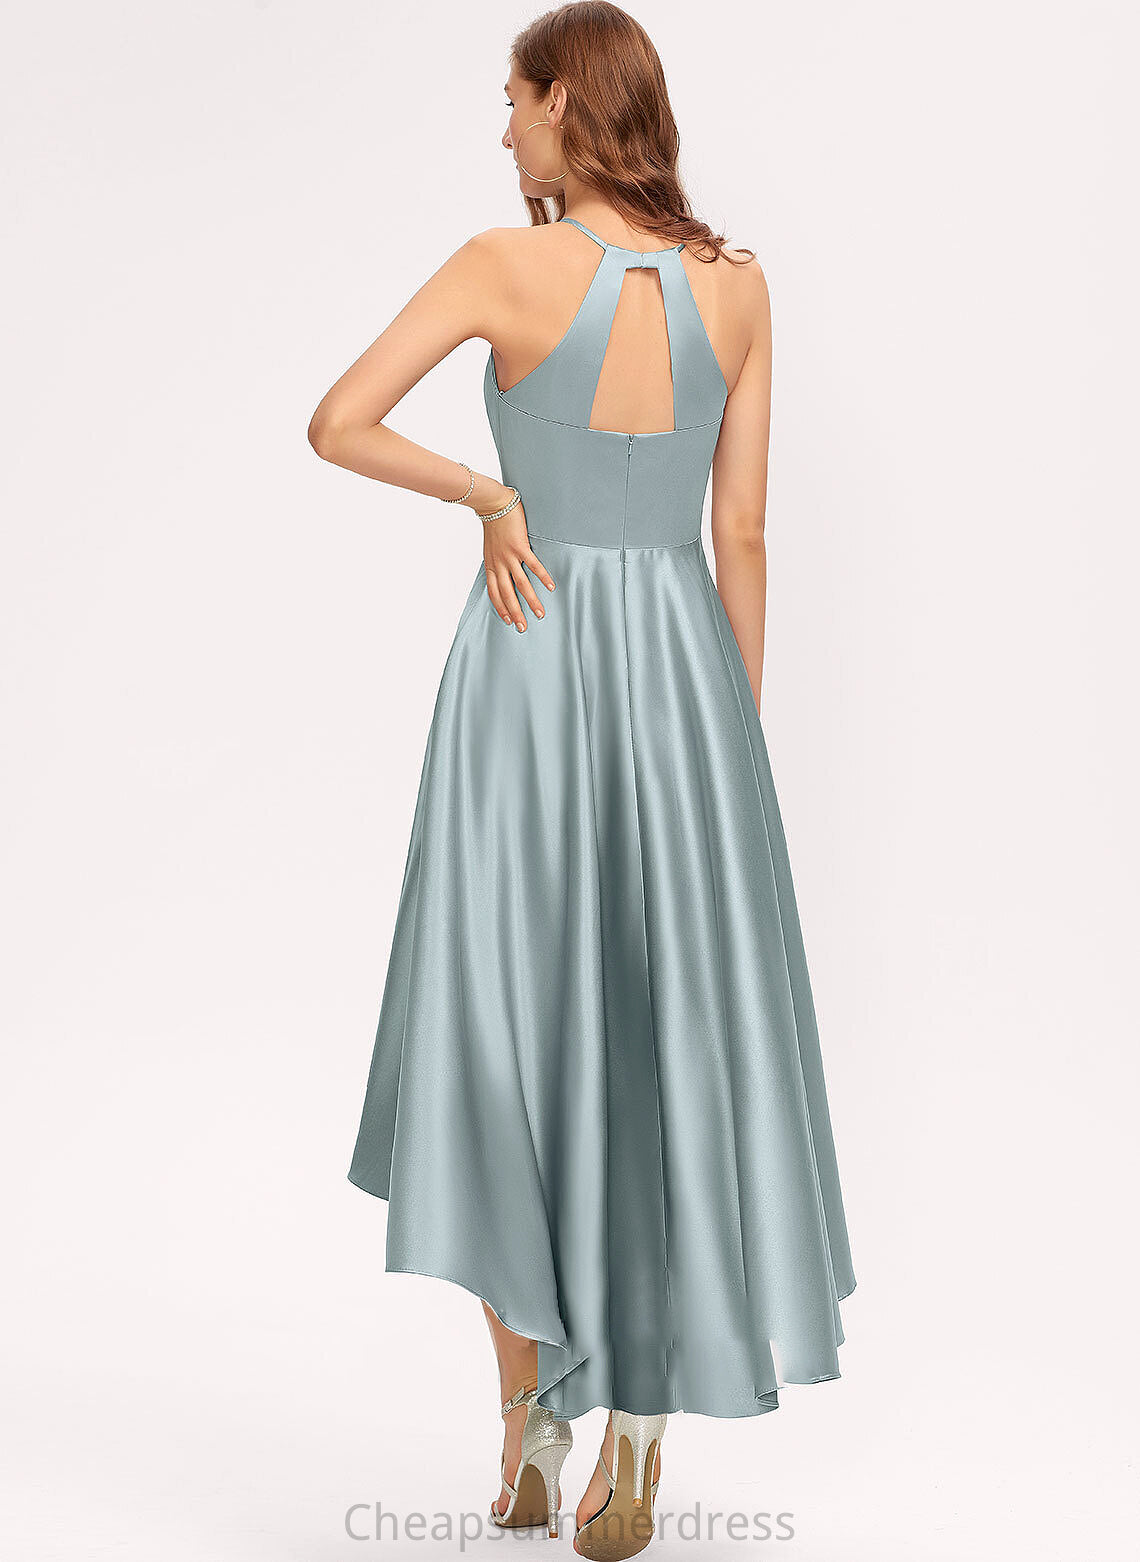 Length Neckline Pockets ScoopNeck A-Line Silhouette Fabric Embellishment Asymmetrical Nyasia Sleeveless Sequins